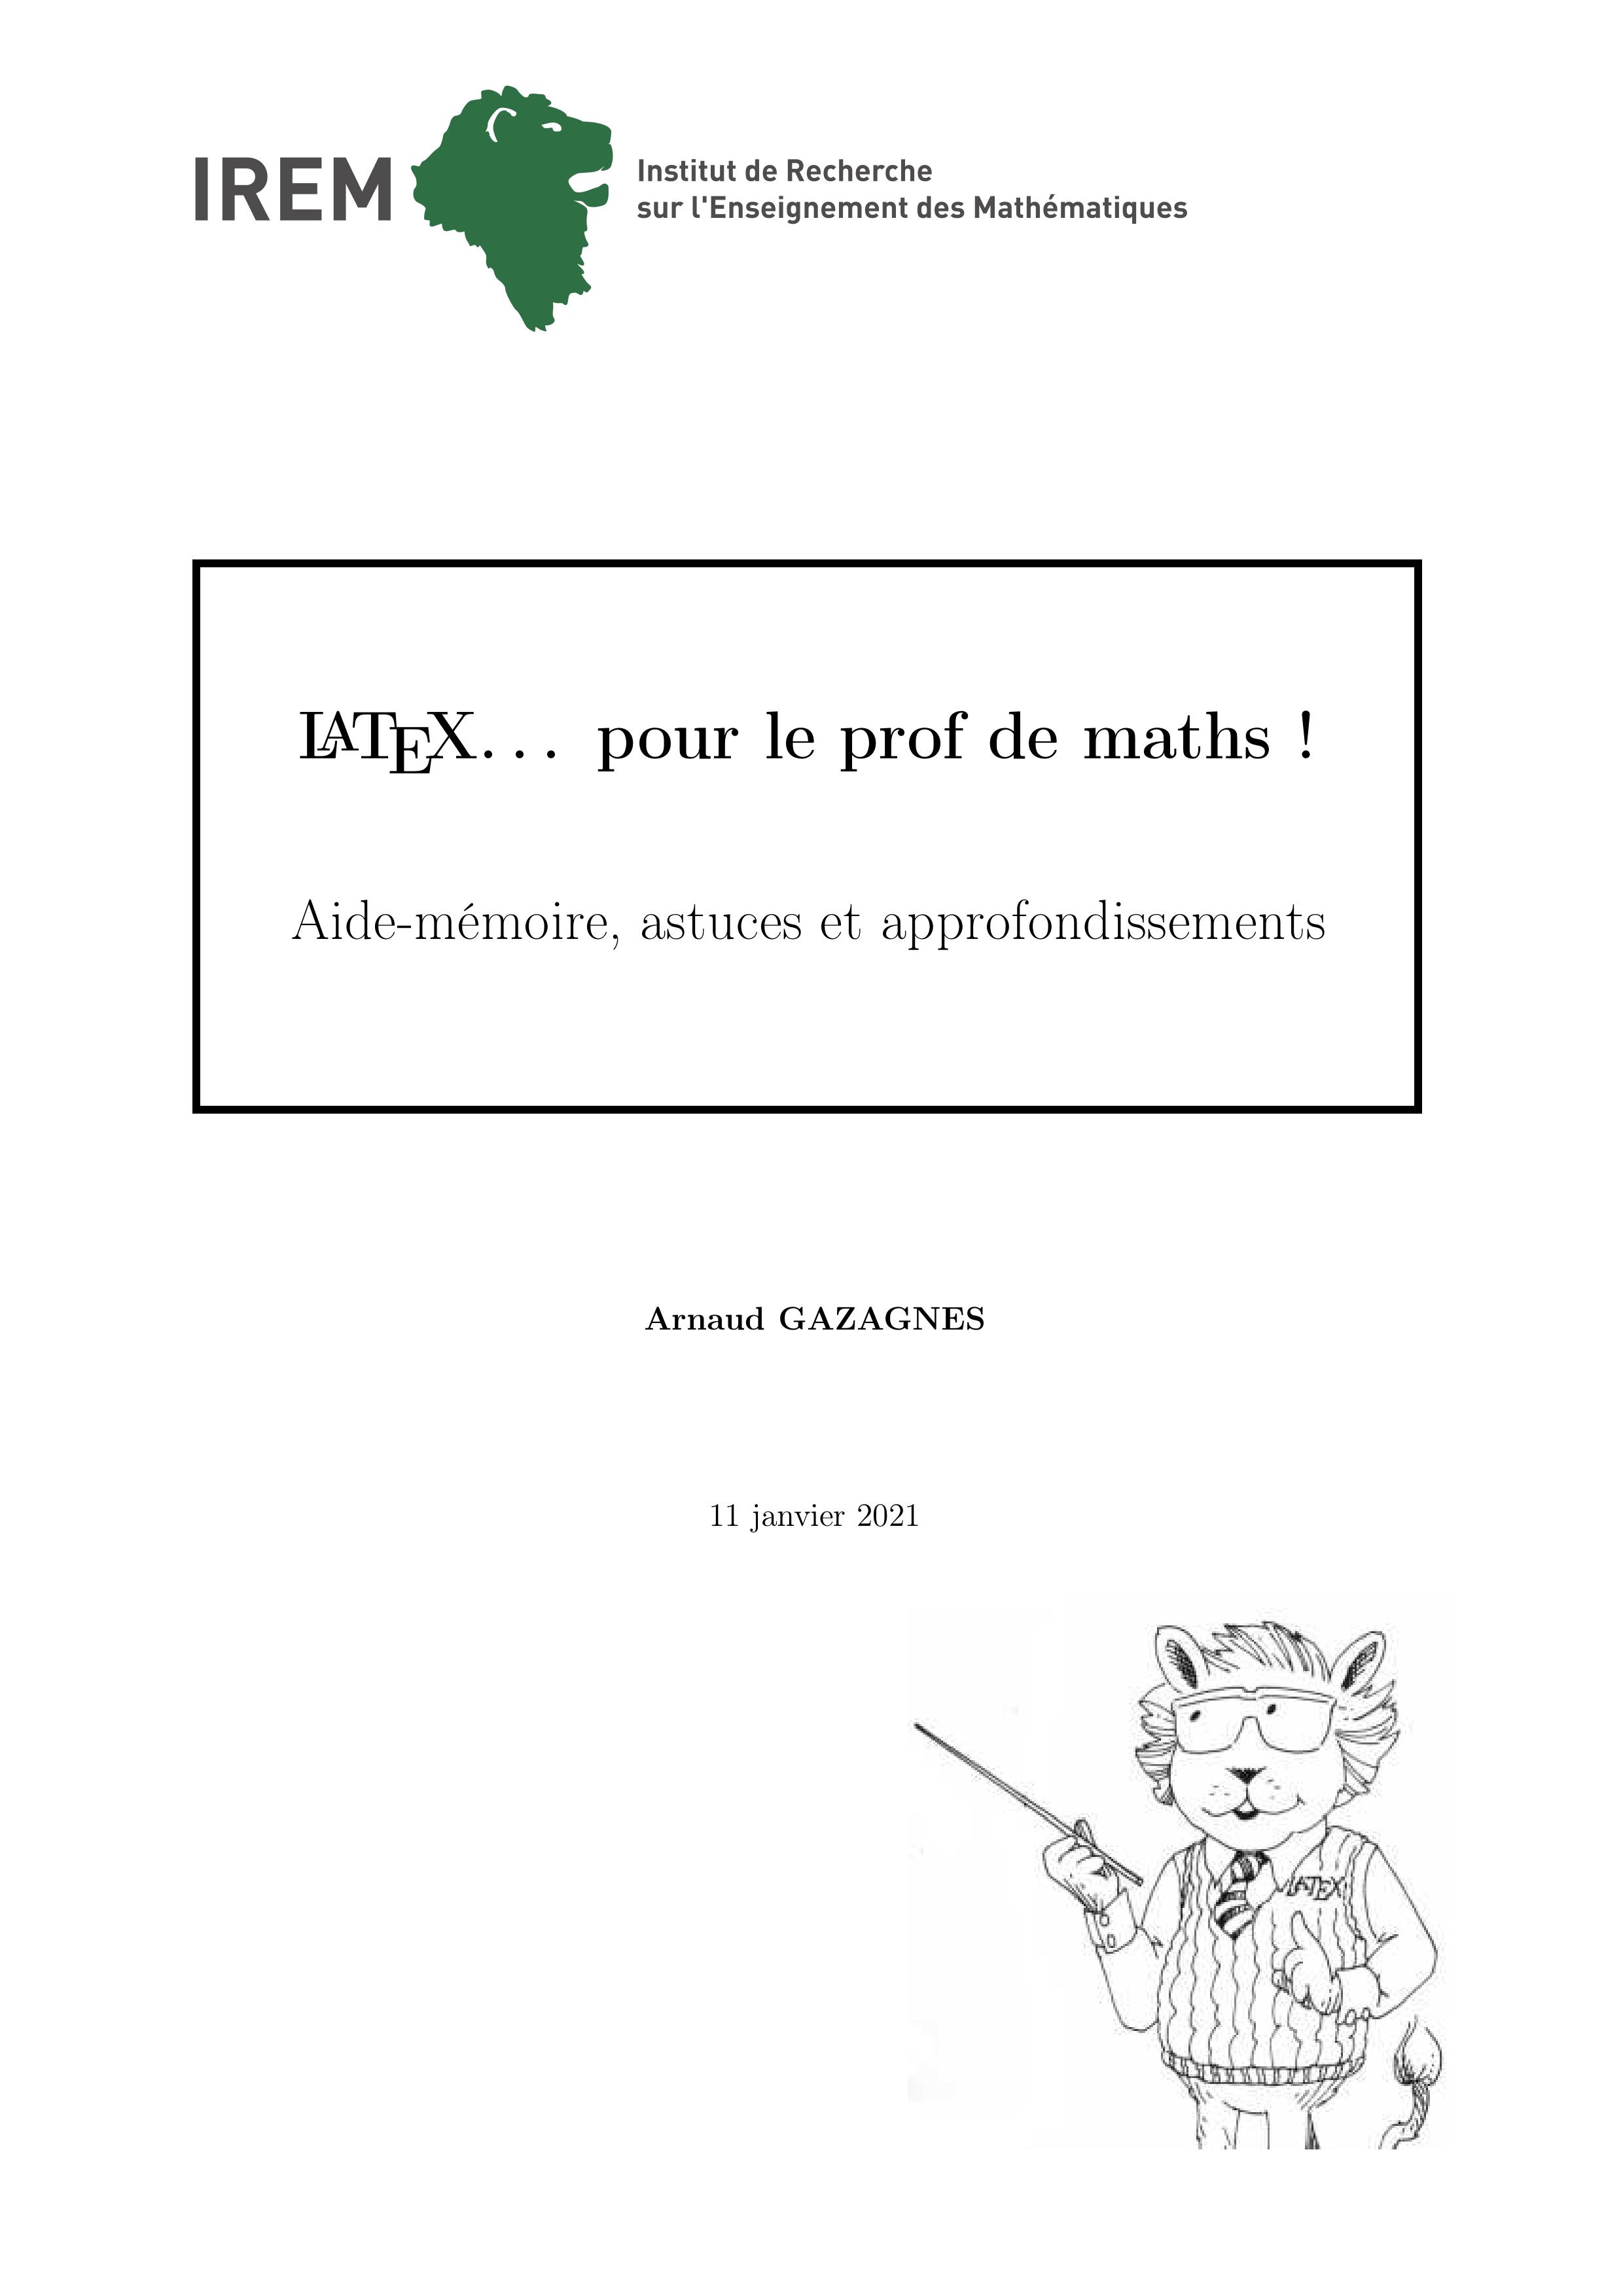 Thumbnail of book LATEX pour le prof de maths ! Aide-mémoire, astuces et approfondissements Arnaud GAZAGNES cover